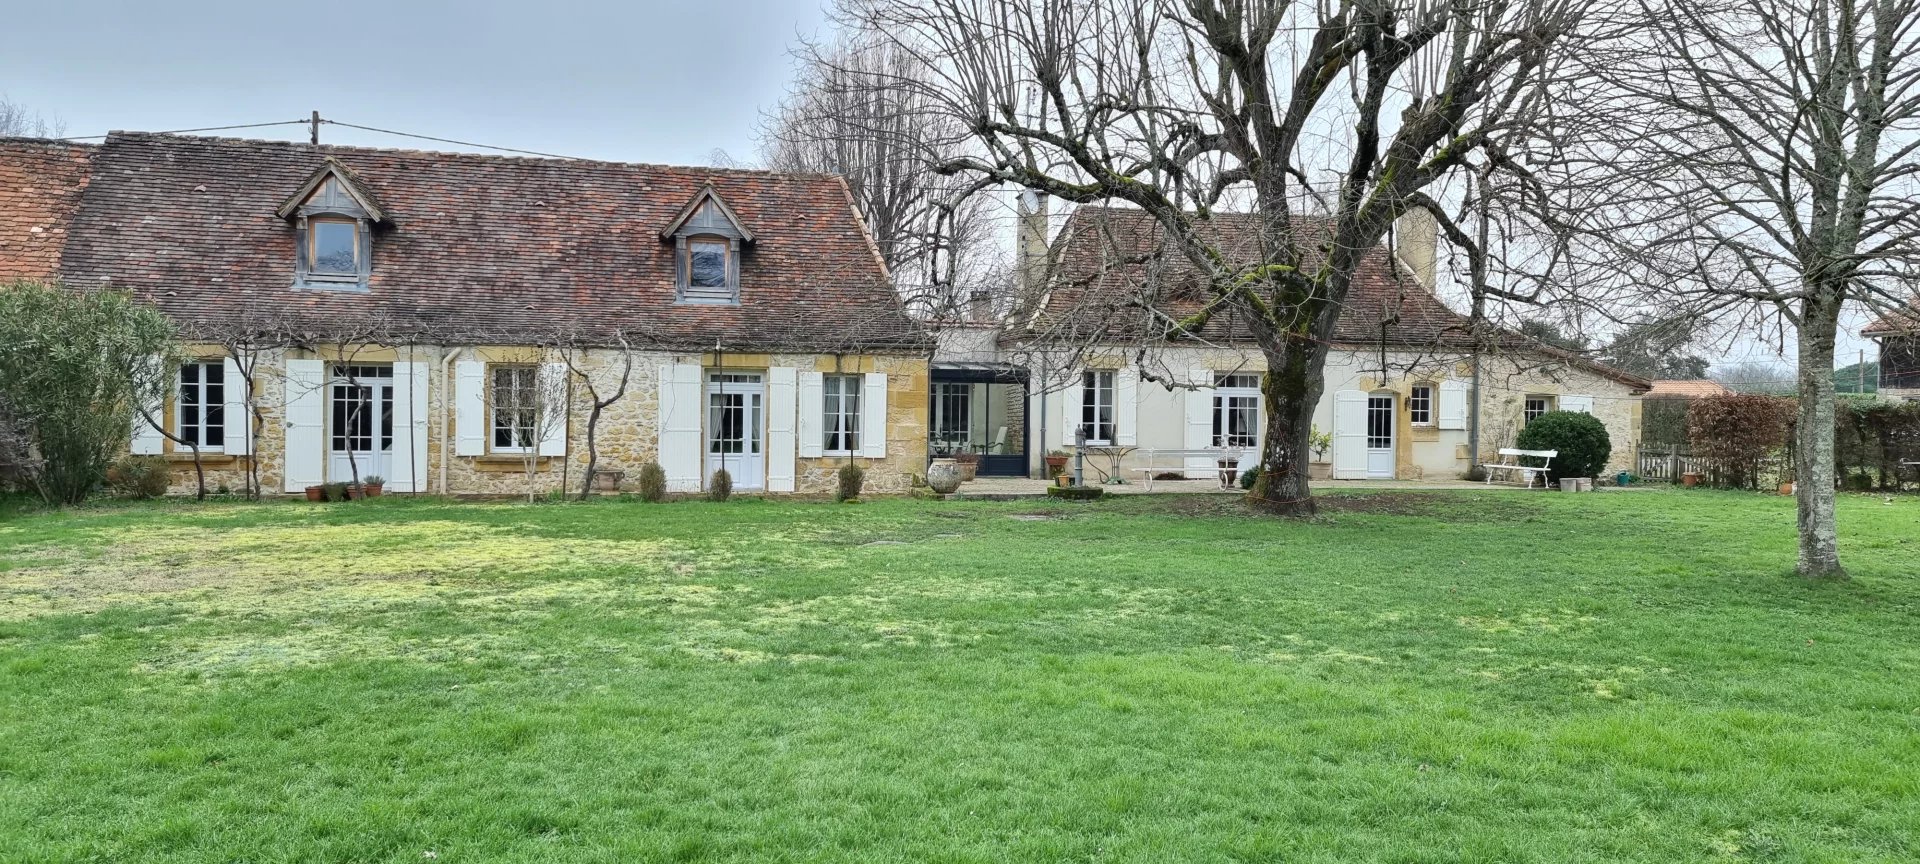 Double maison Périgourdine en pierres  XIX ème siècle  sur 1.2HA 387 m